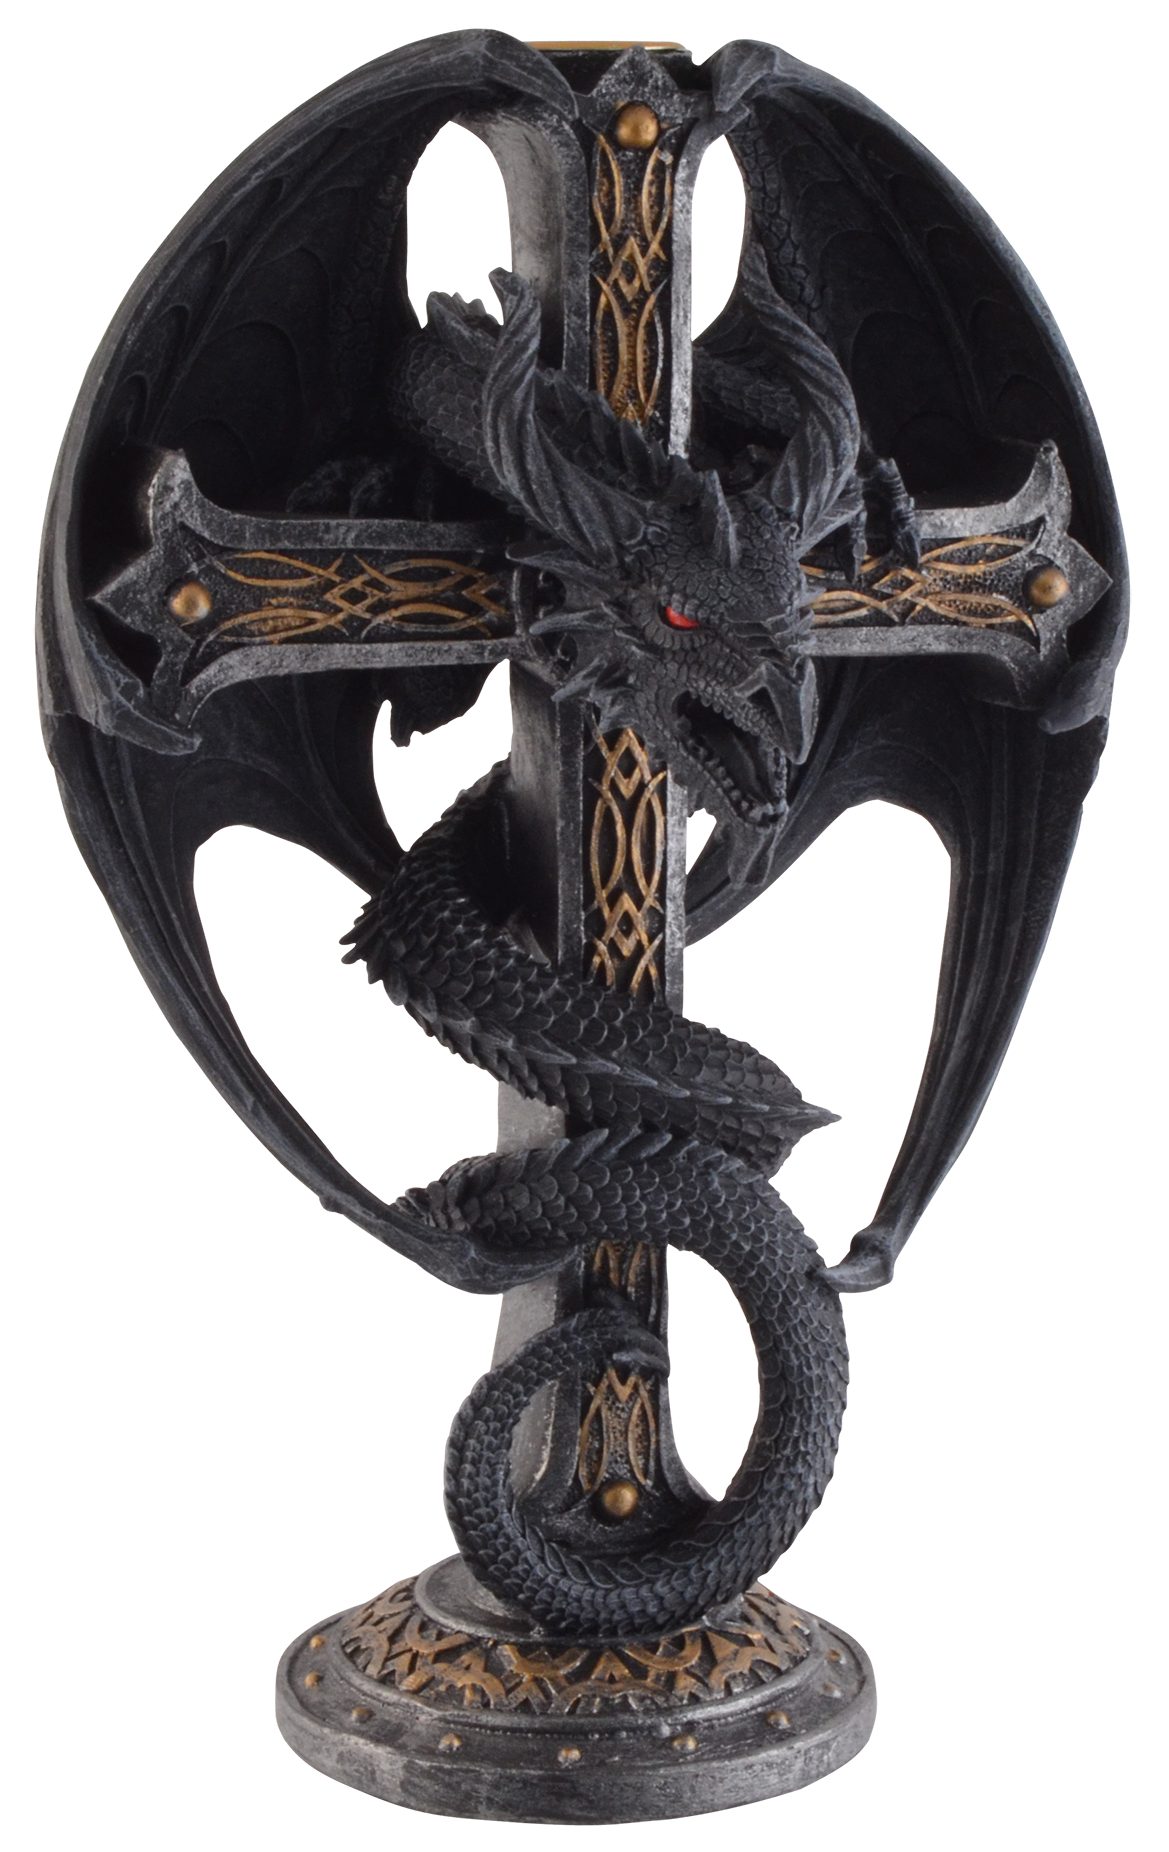 Vogler direct Gmbh Kerzenleuchter Kerzenleuchter "Dragon Cross", aus Kunststein, Größe: LxBxH ca. 16x12x26 cm | Kerzenständer